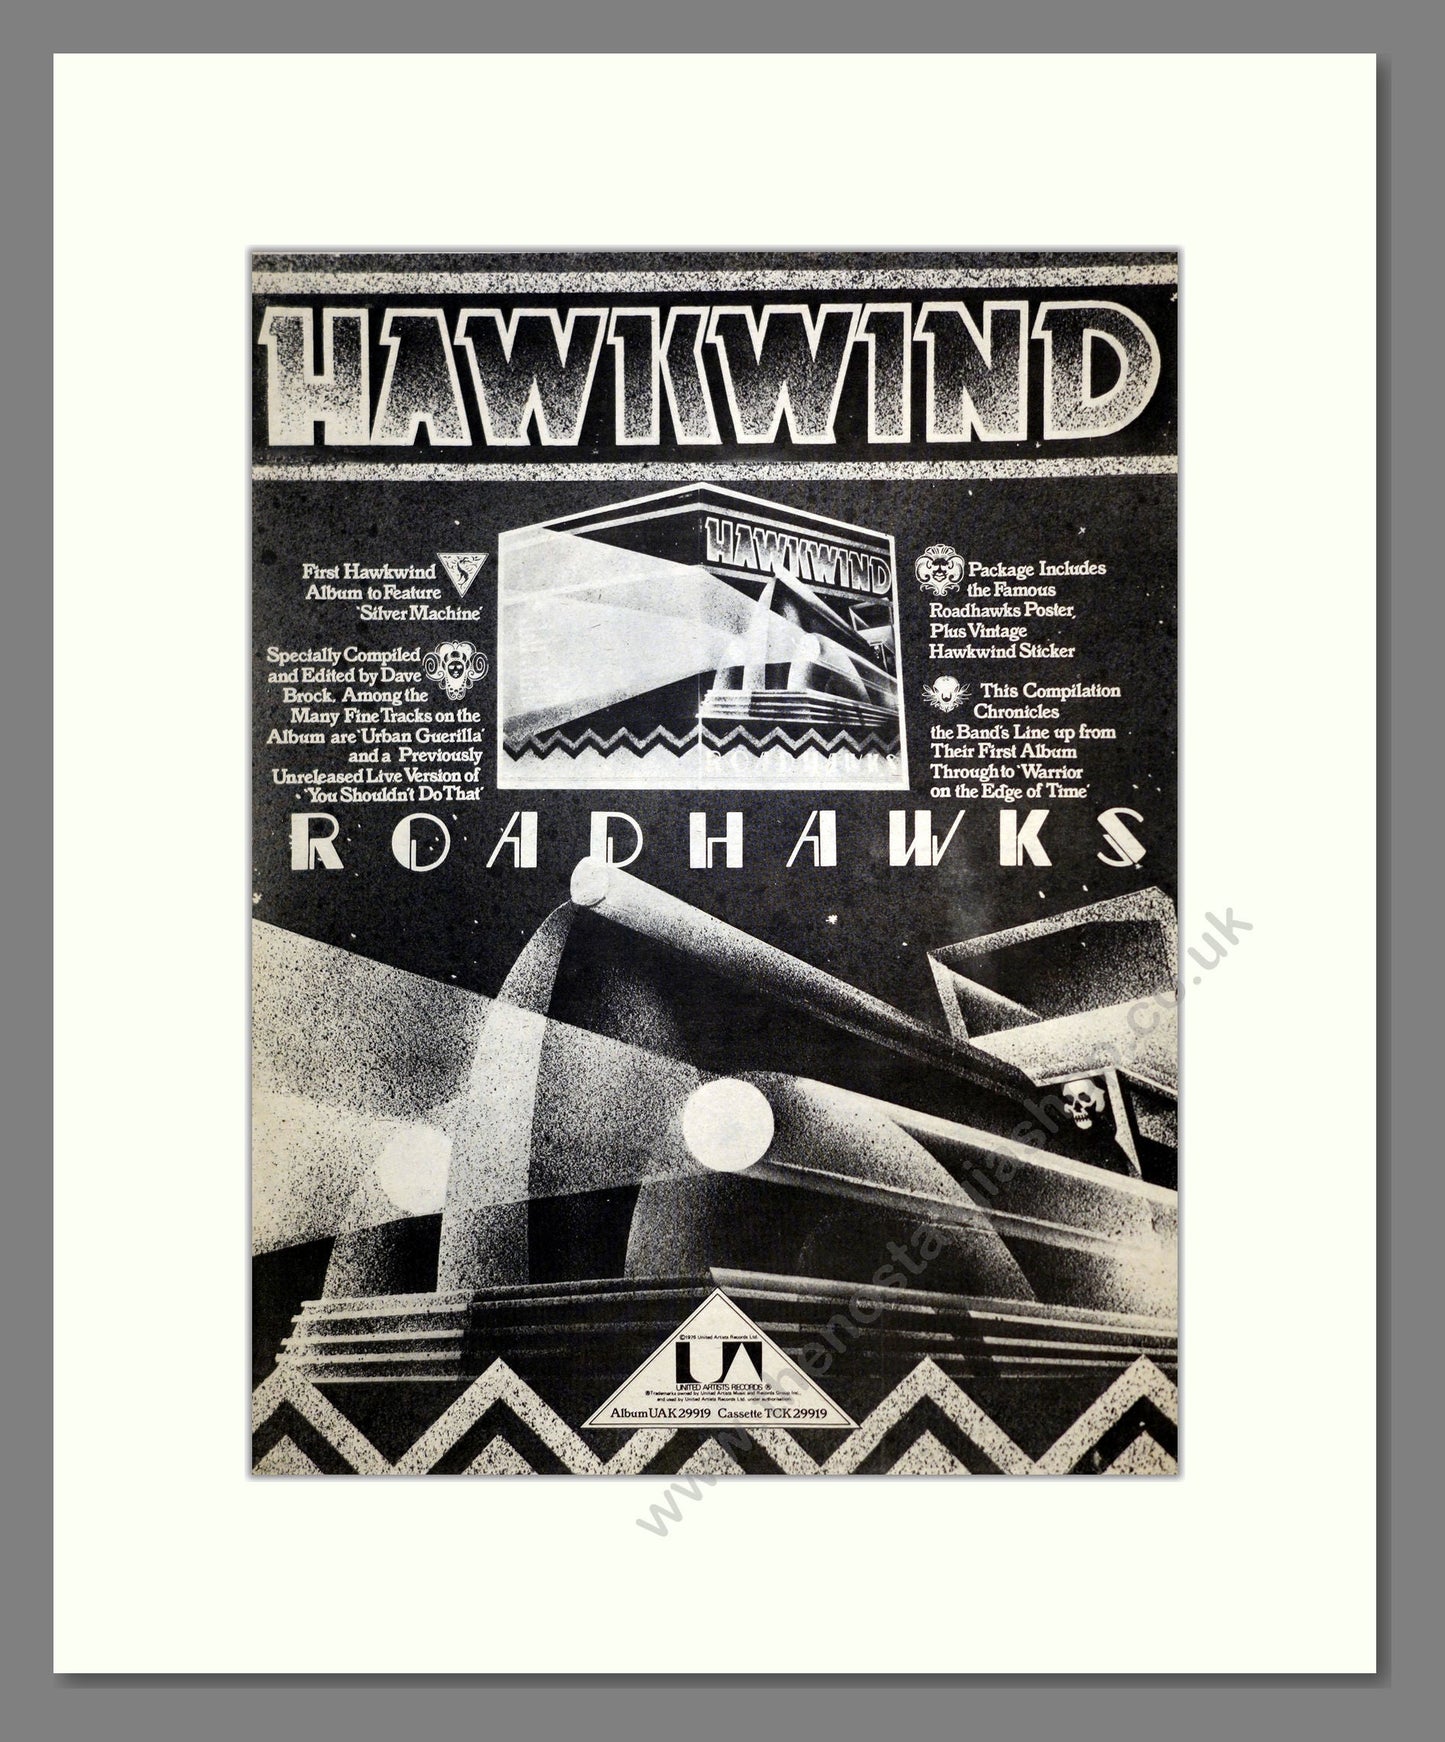 Hawkwind - Roadhawks. Vintage Advert 1976 (ref AD17583)